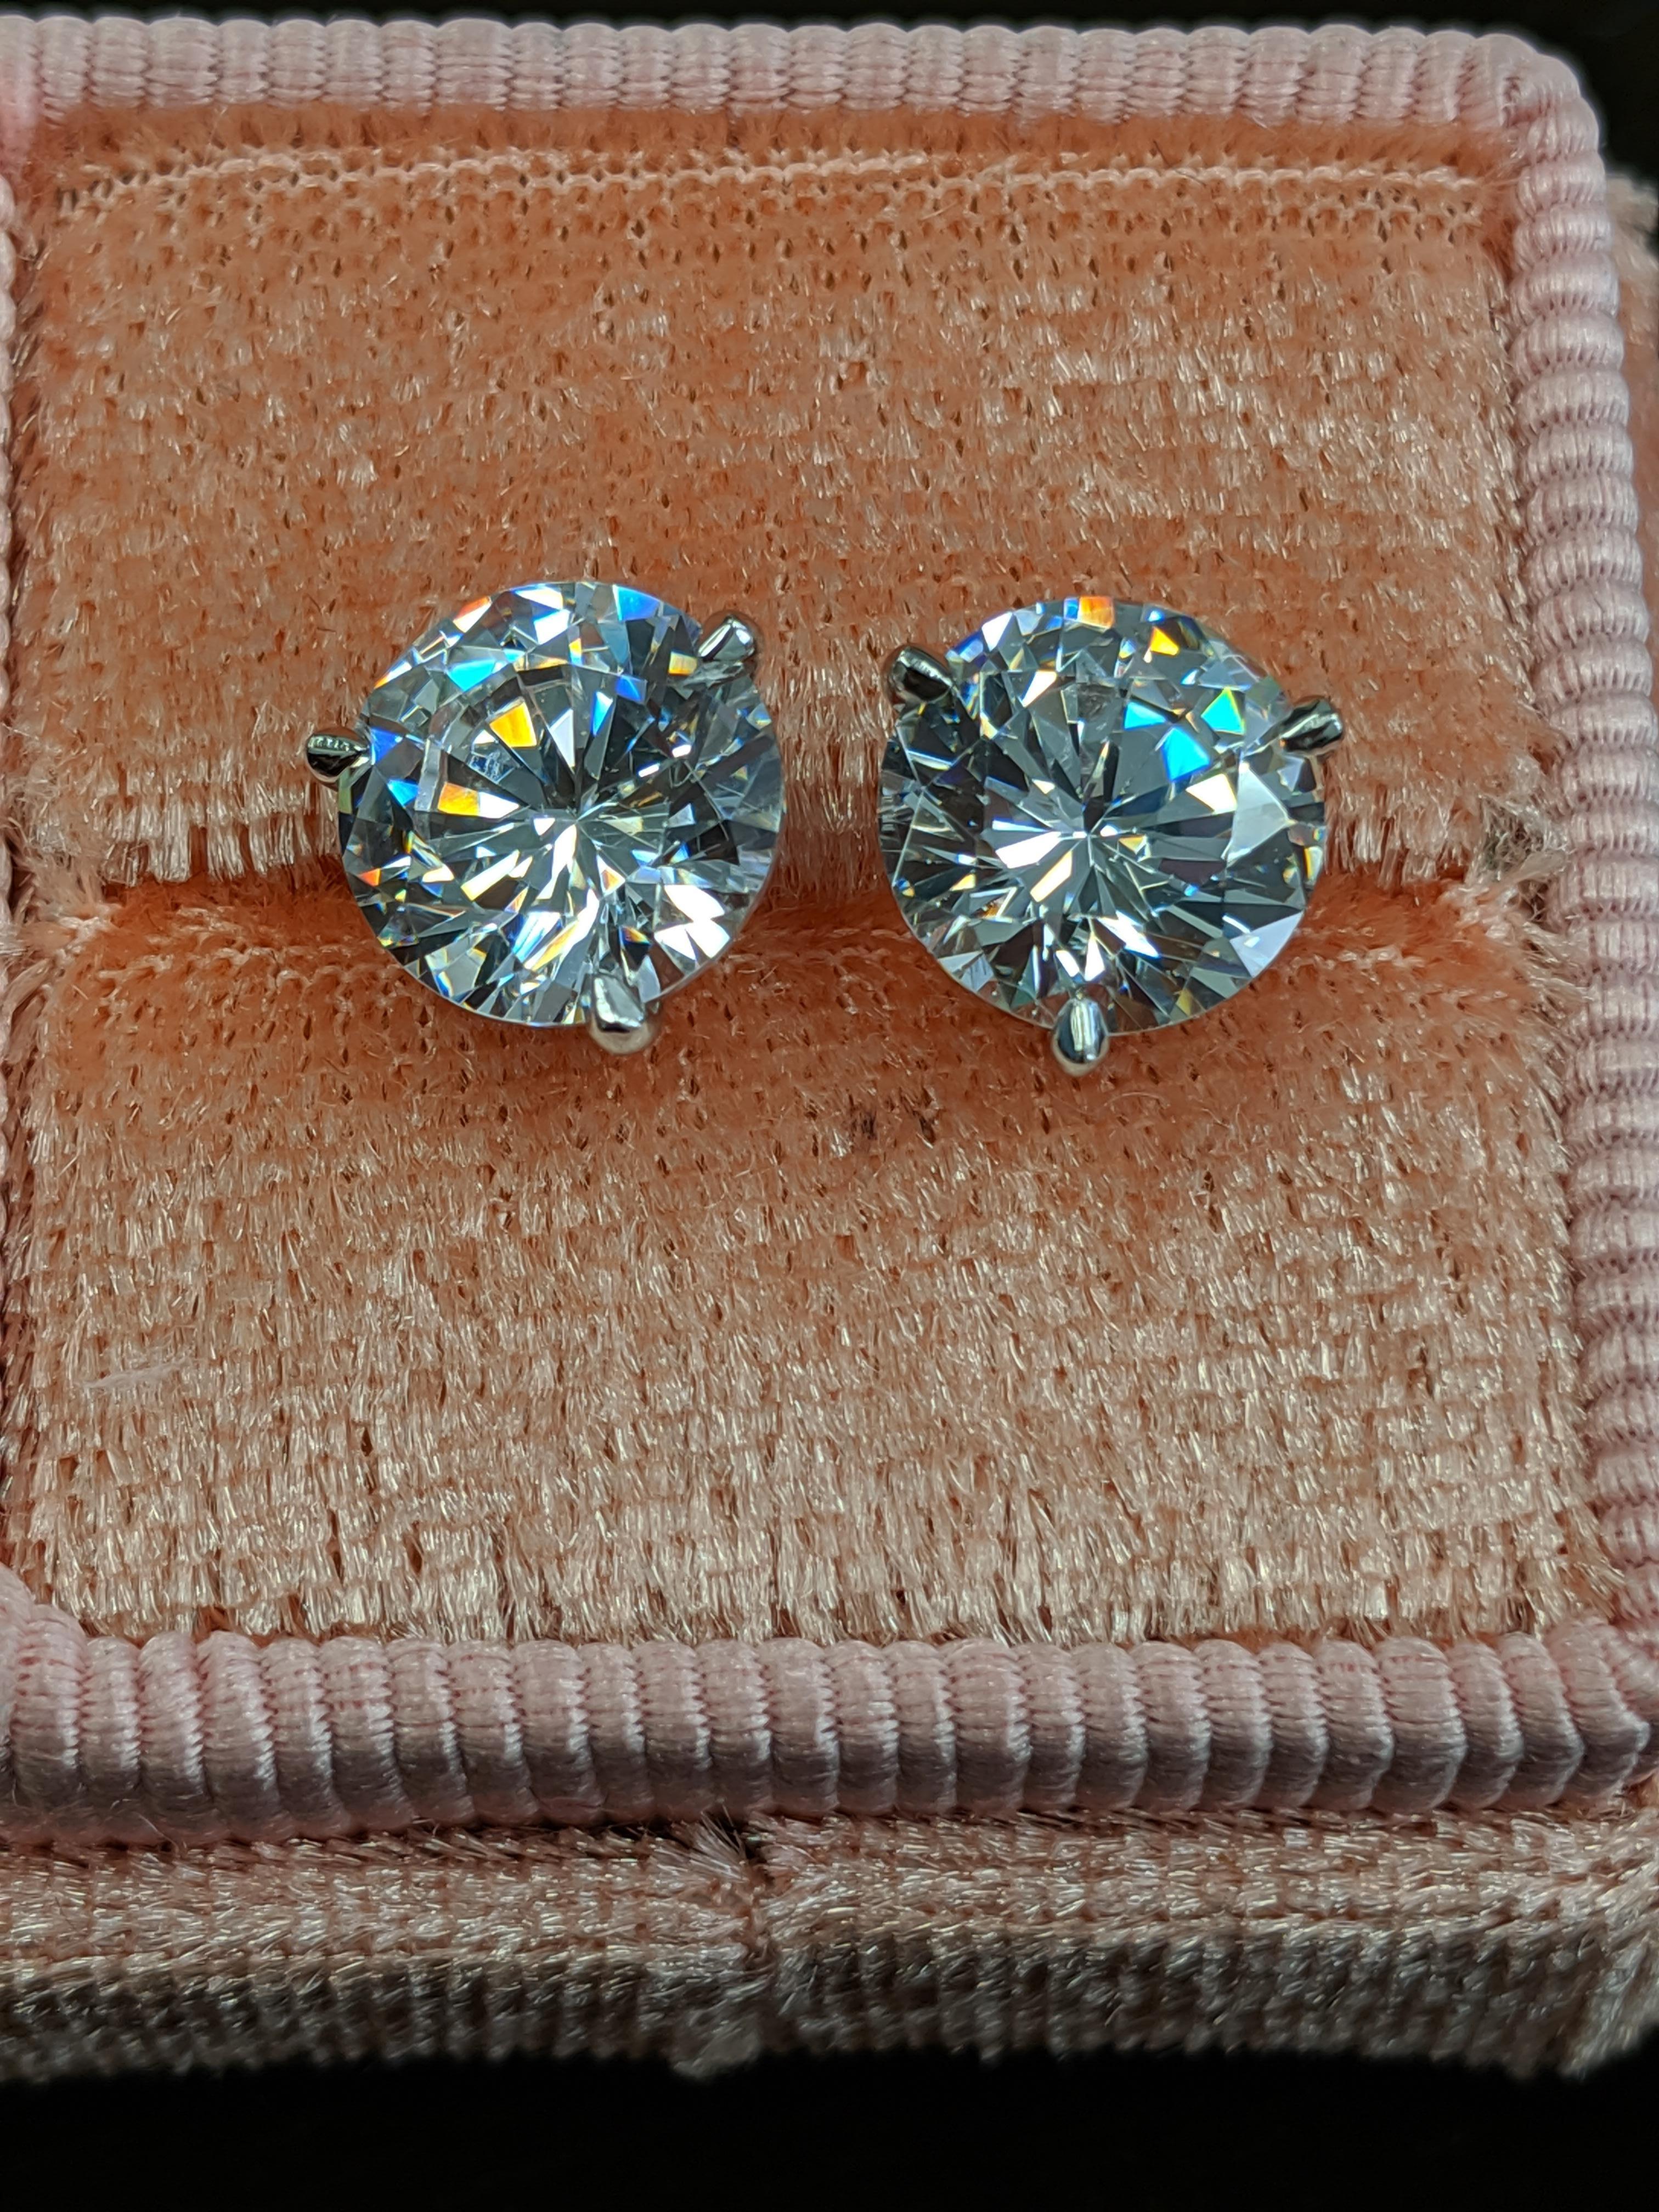 4 carat diamond earrings on ear